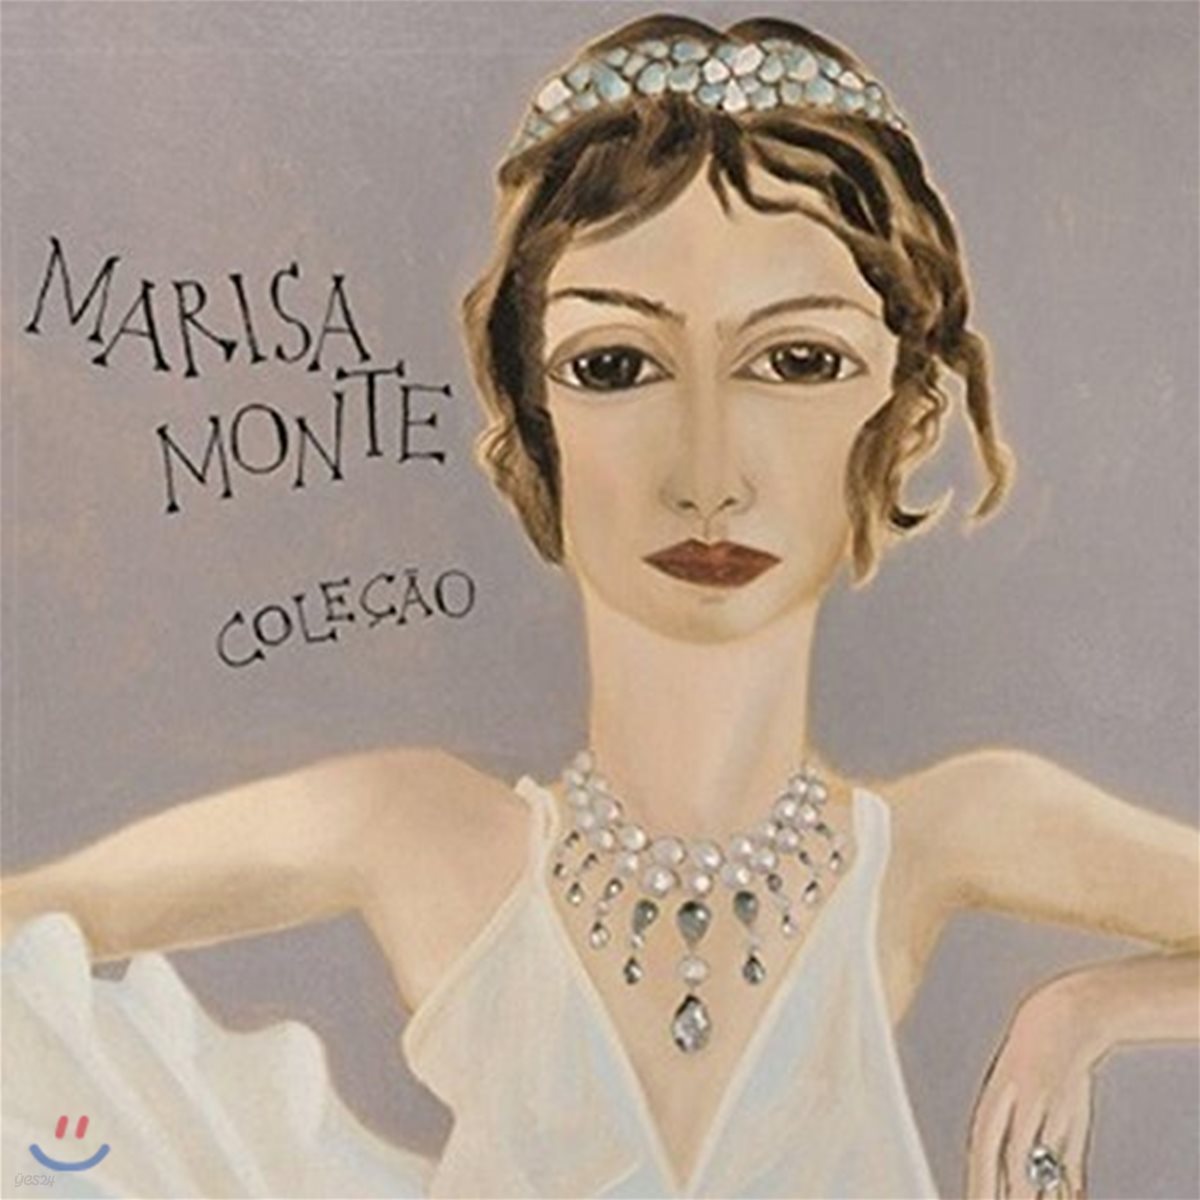 Marisa Monte (마리사 몬치) - Colecao (베스트 컬렉션)